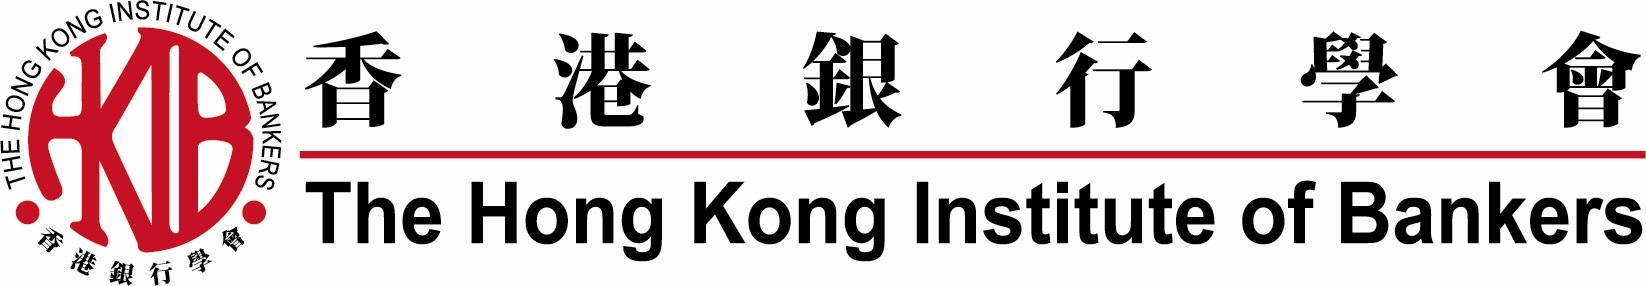 HKIB Logo (full) + 55th logo